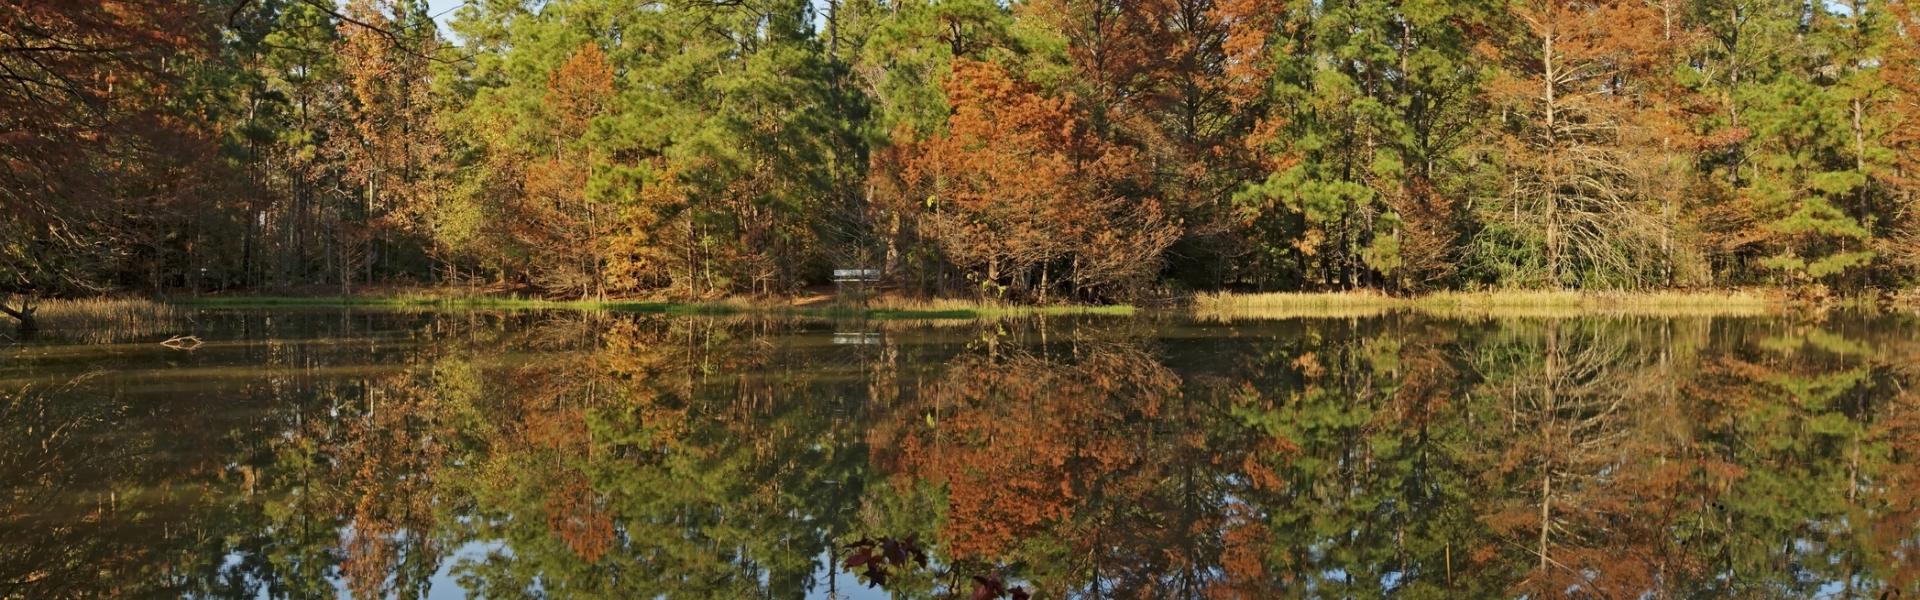 Georgia State Parks - HomeToGo